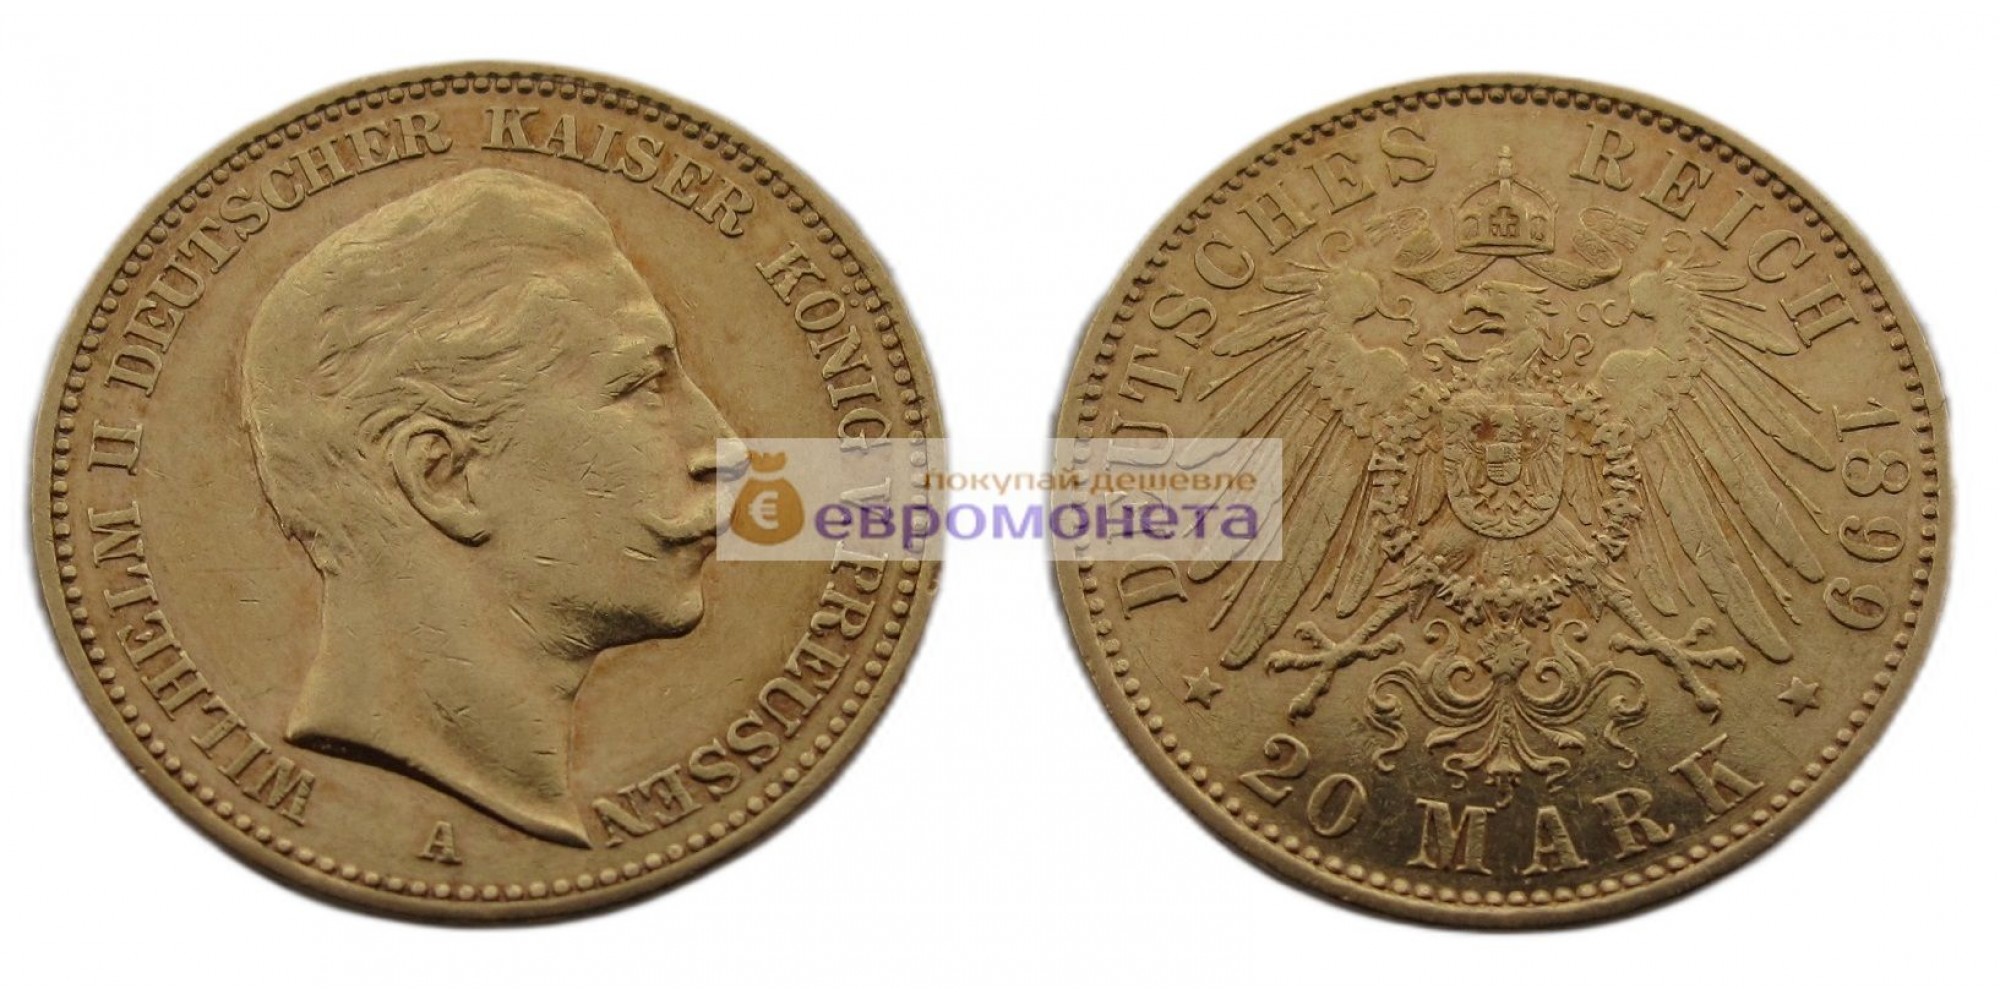 Германская империя Пруссия 20 марок 1899 год "A" Вильгельм II. Золото